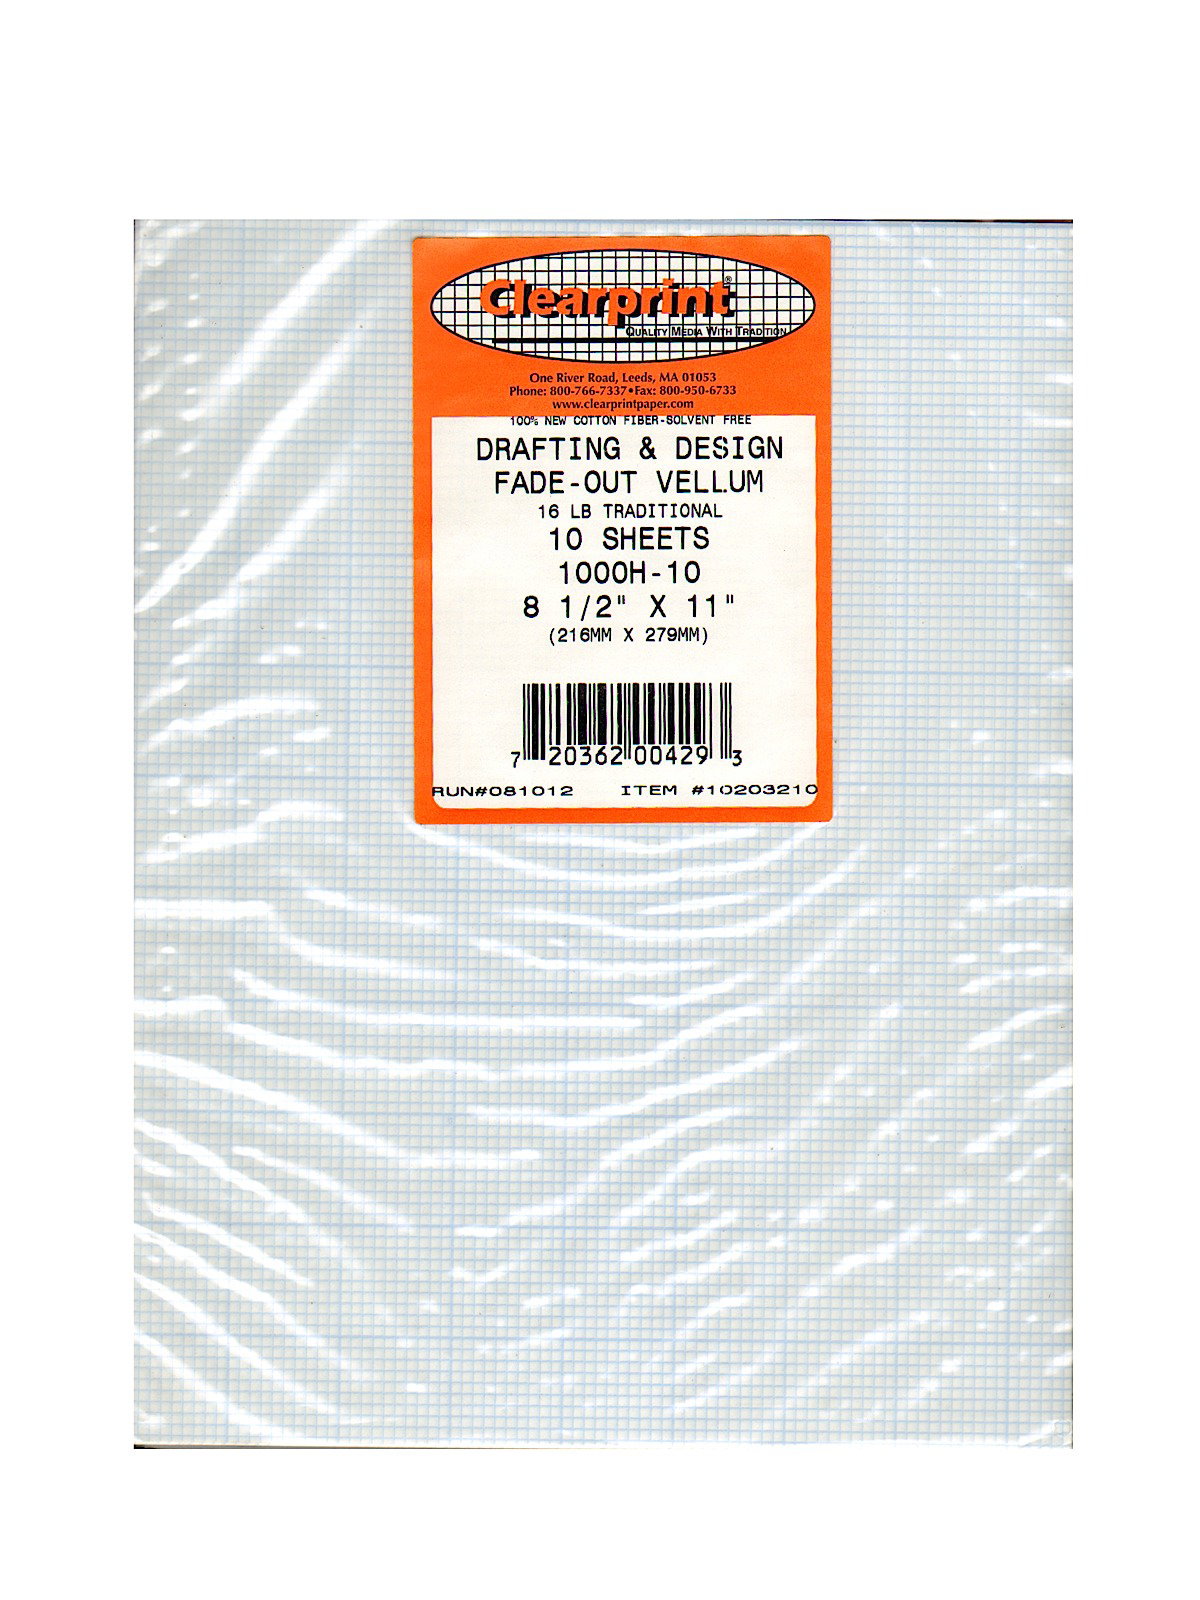 Clearprint 1000H Vellum Transparent Plain Sheets 24 x 36